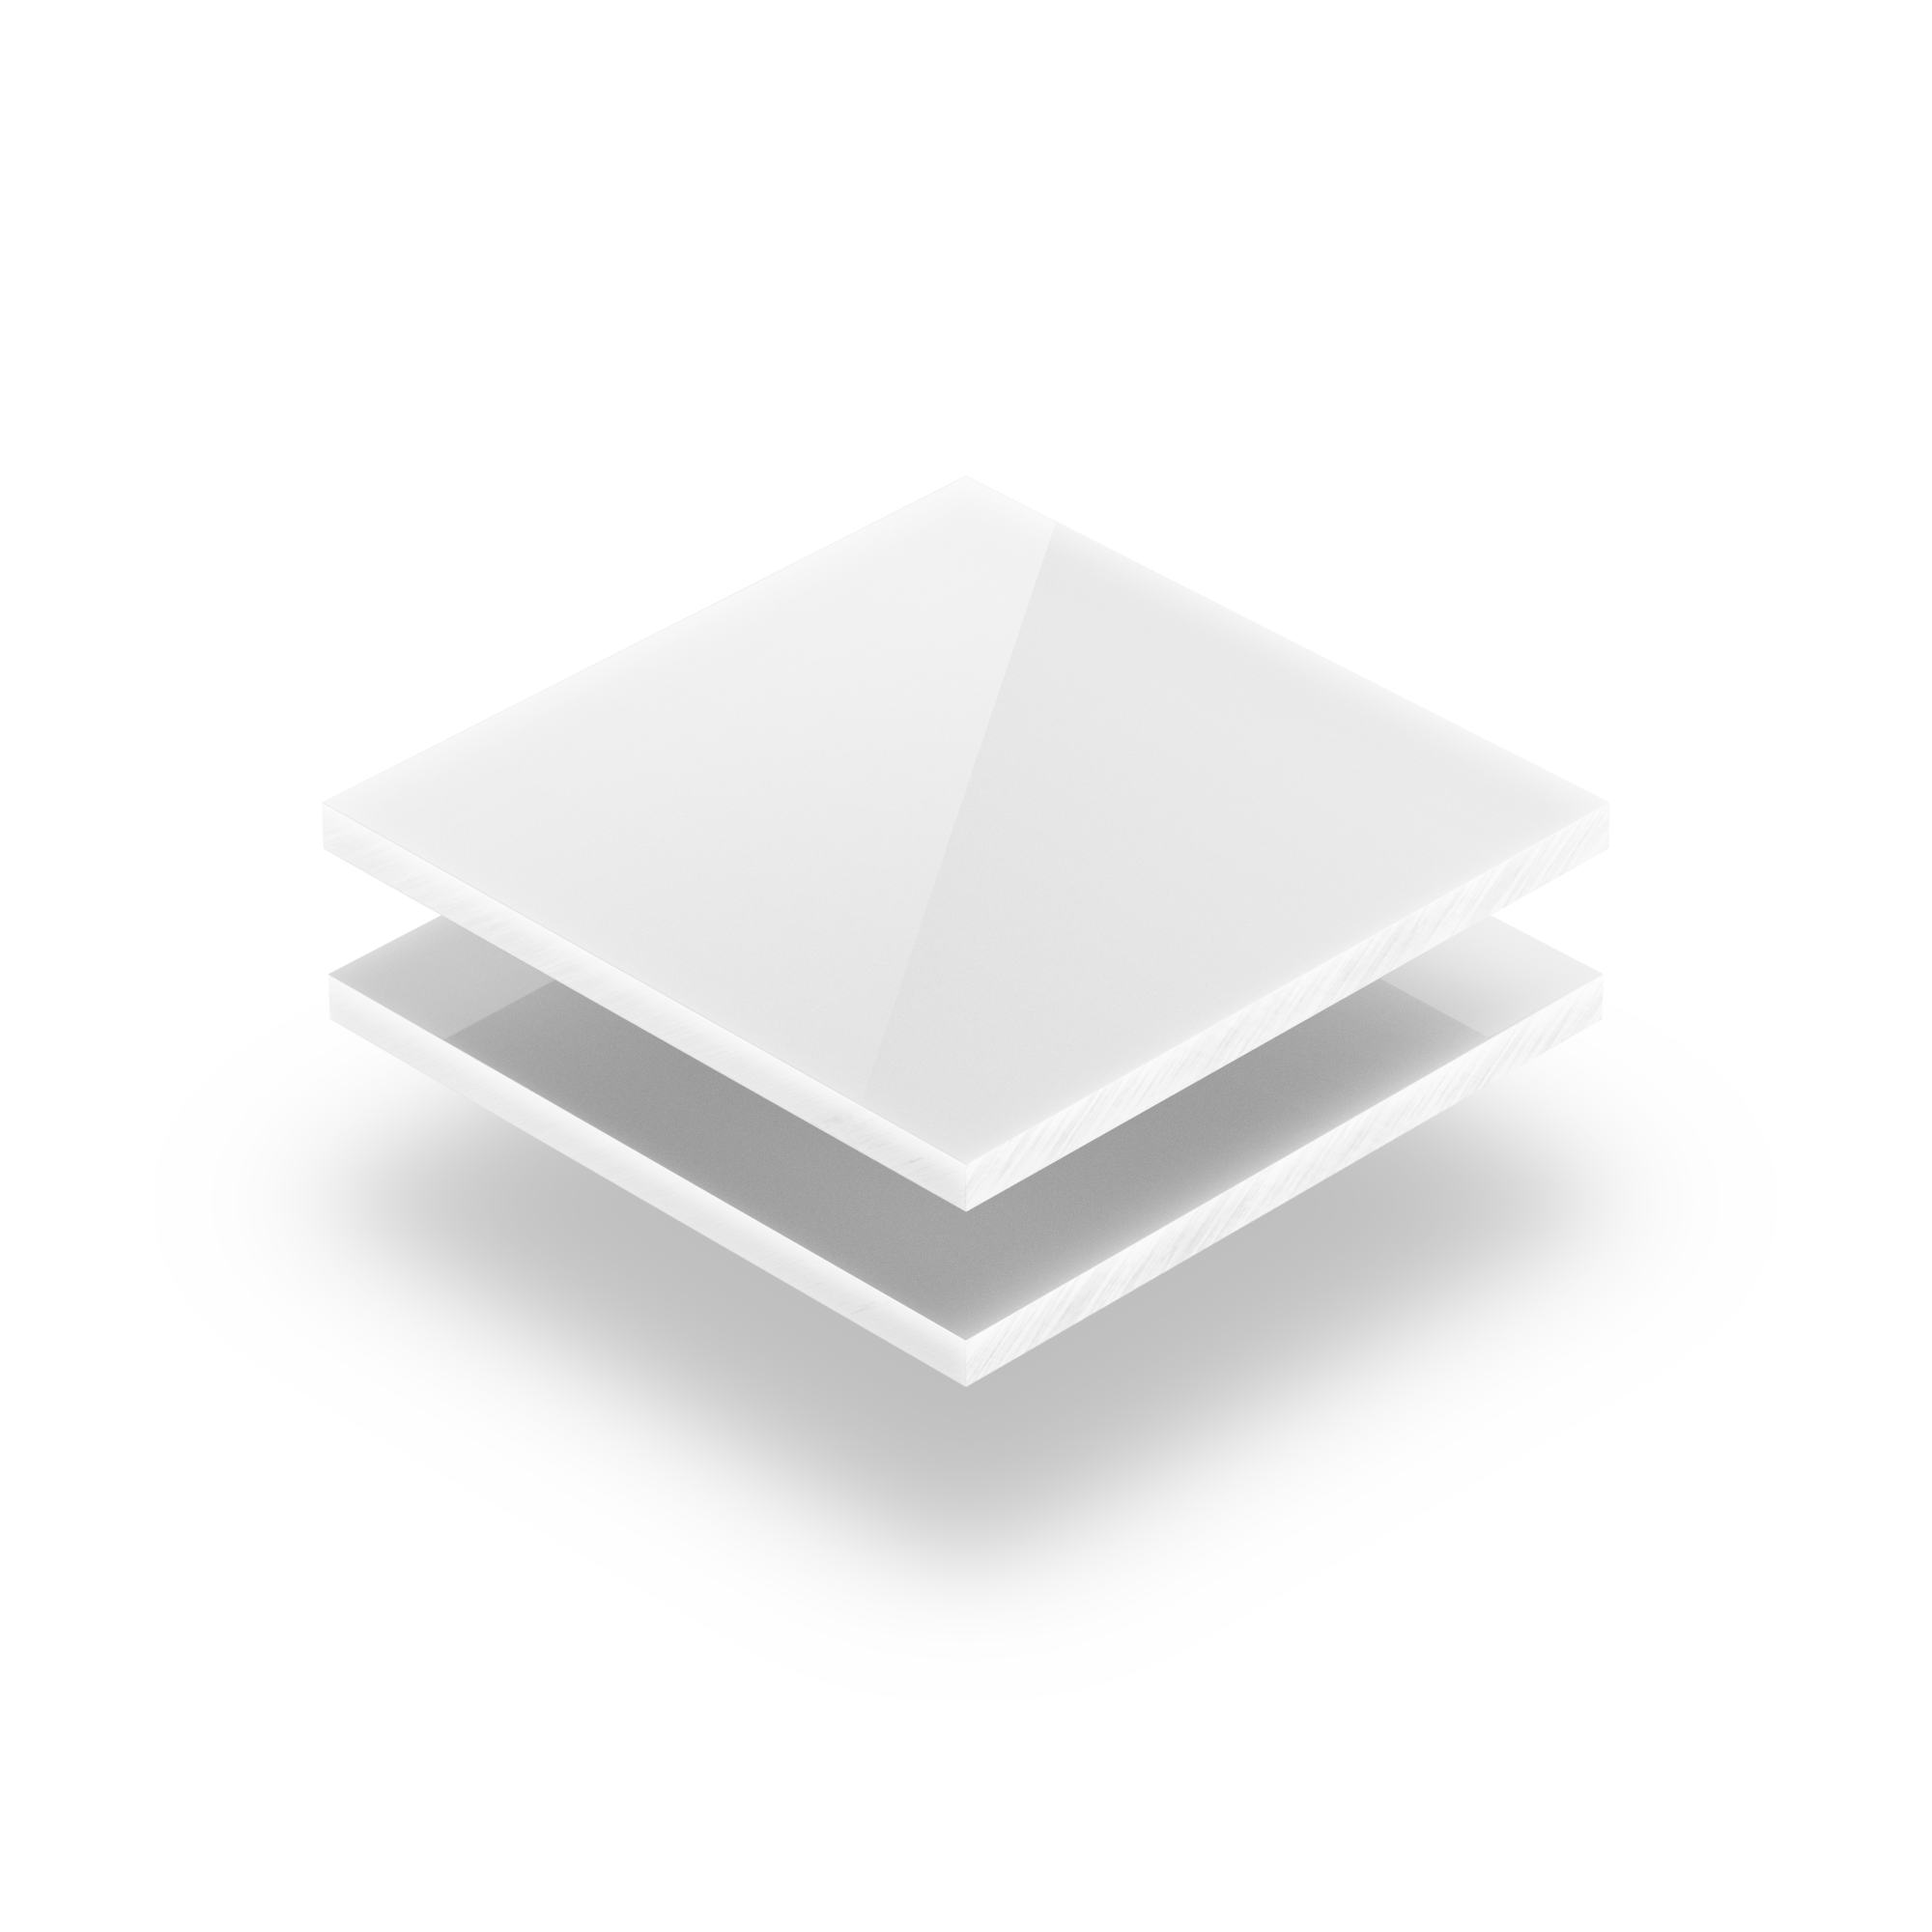 Plaque Verre synthétique blanc 2 mm ou 4 mm. Feuille de verre